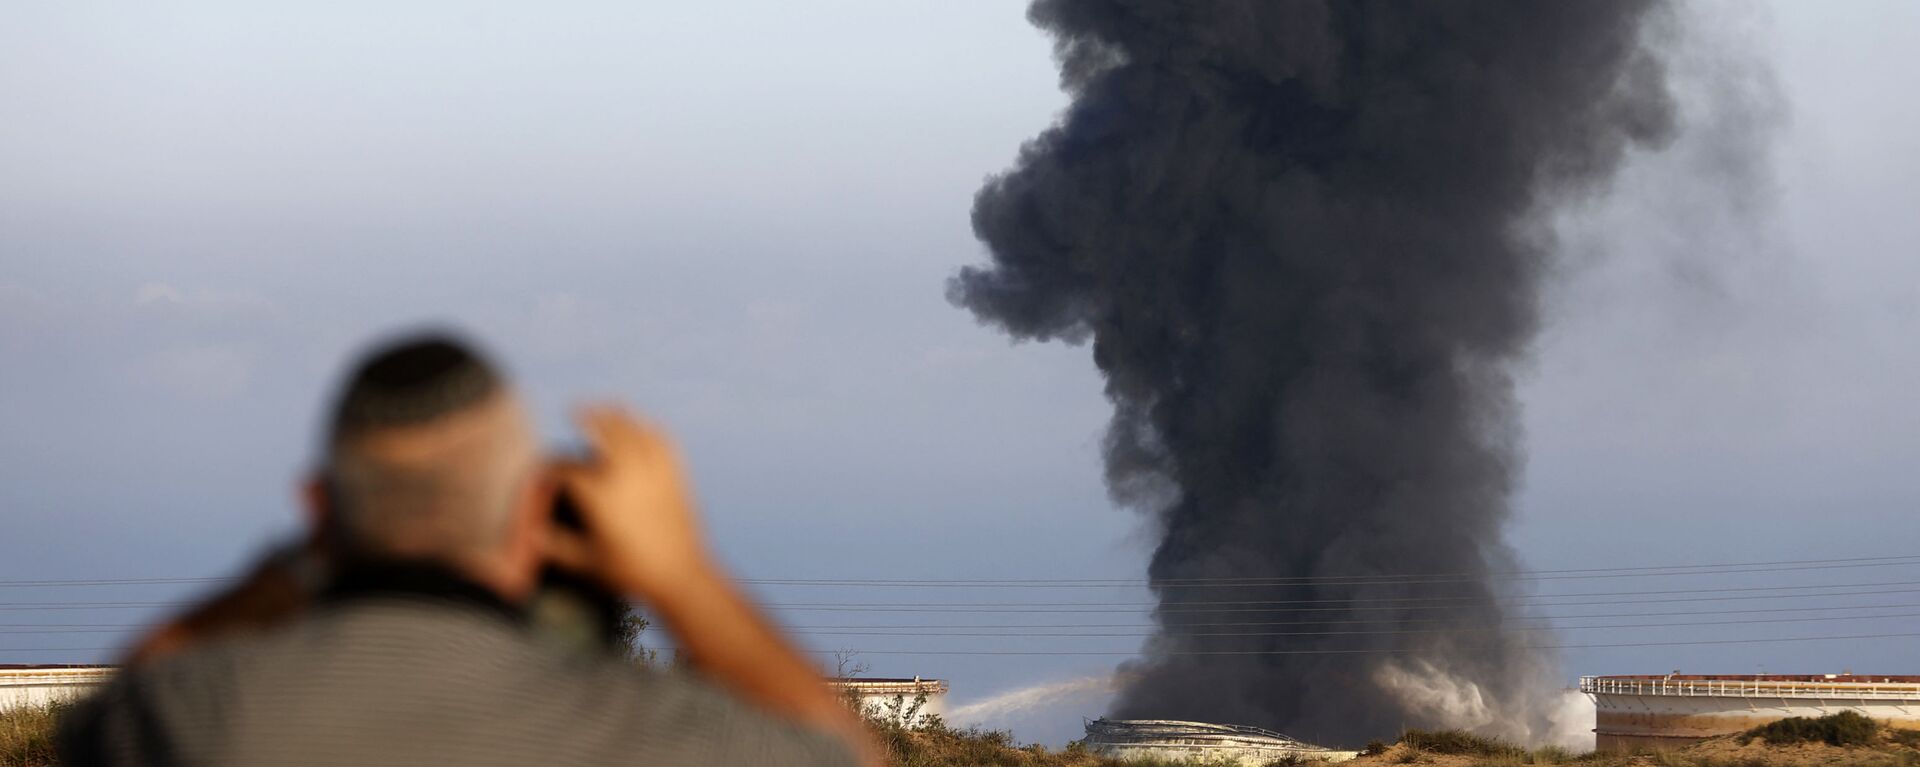 Một người đàn ông Israel nhìn từ xa khi khói bốc lên vào sáng sớm ngày 12 tháng 5 năm 2021 từ nhà máy lọc dầu của Ashkelon, bị trúng tên lửa Hamas vào ngày hôm trước, ở thành phố phía nam Israel, gần Dải Gaza - Sputnik Việt Nam, 1920, 17.05.2021